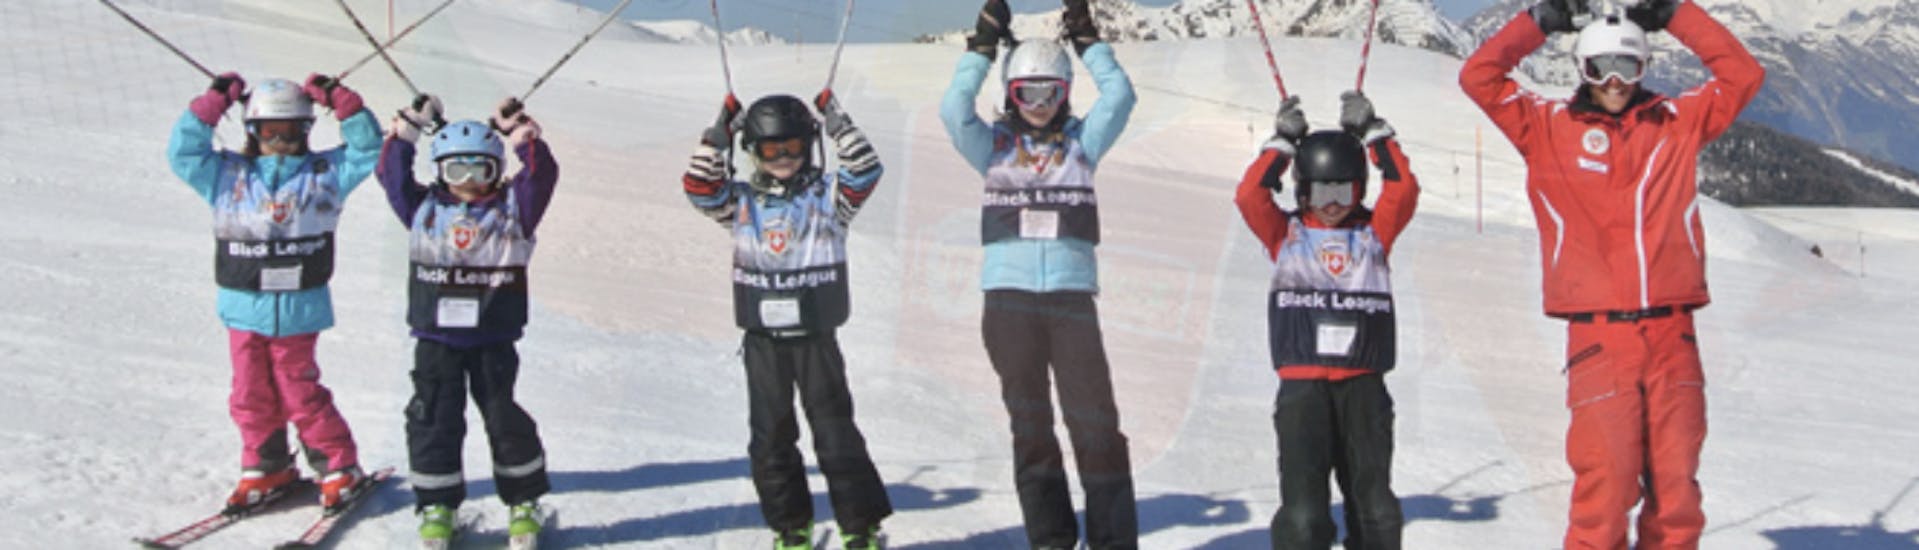 Skilessen voor kinderen voor alle niveaus.